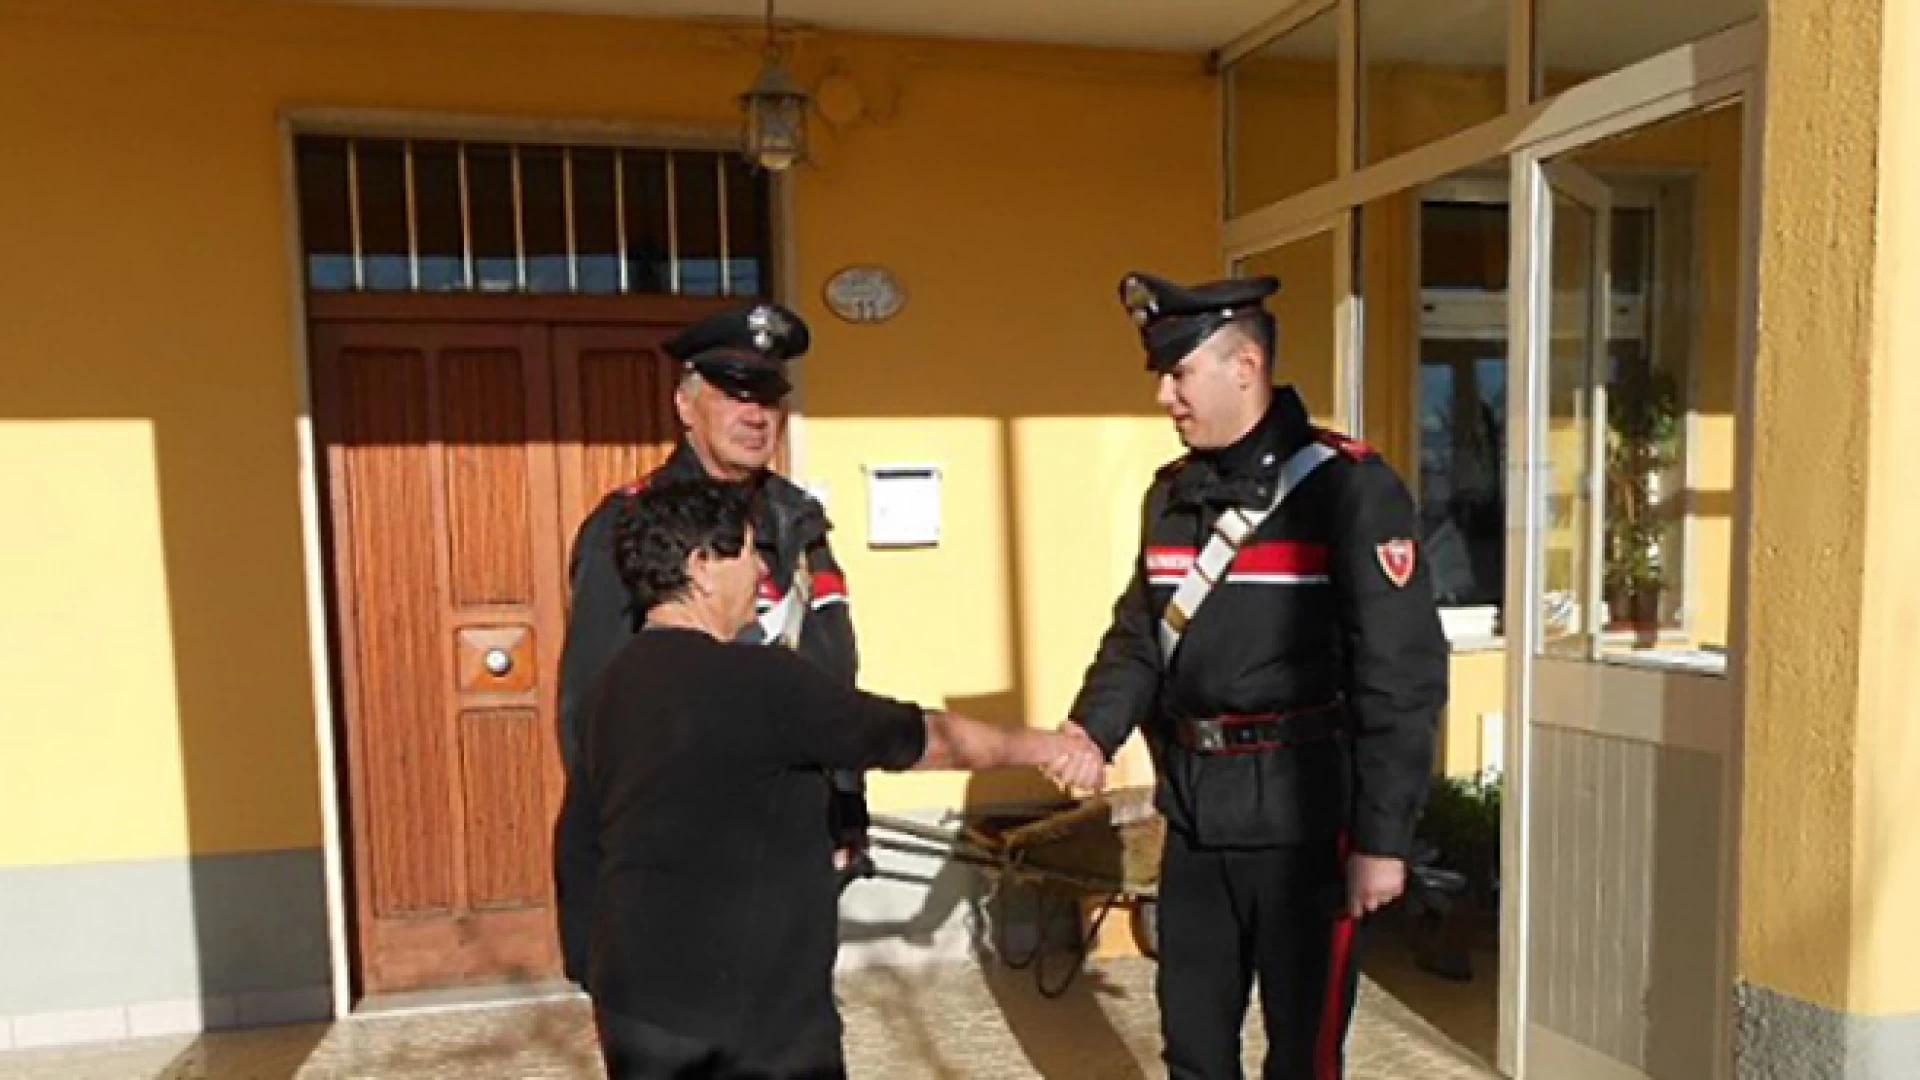 Tentano truffa del pacco ad una coppia di coniugi anziani agnonesi. Due pregiudicati napoletani vengono braccati dai Carabinieri.